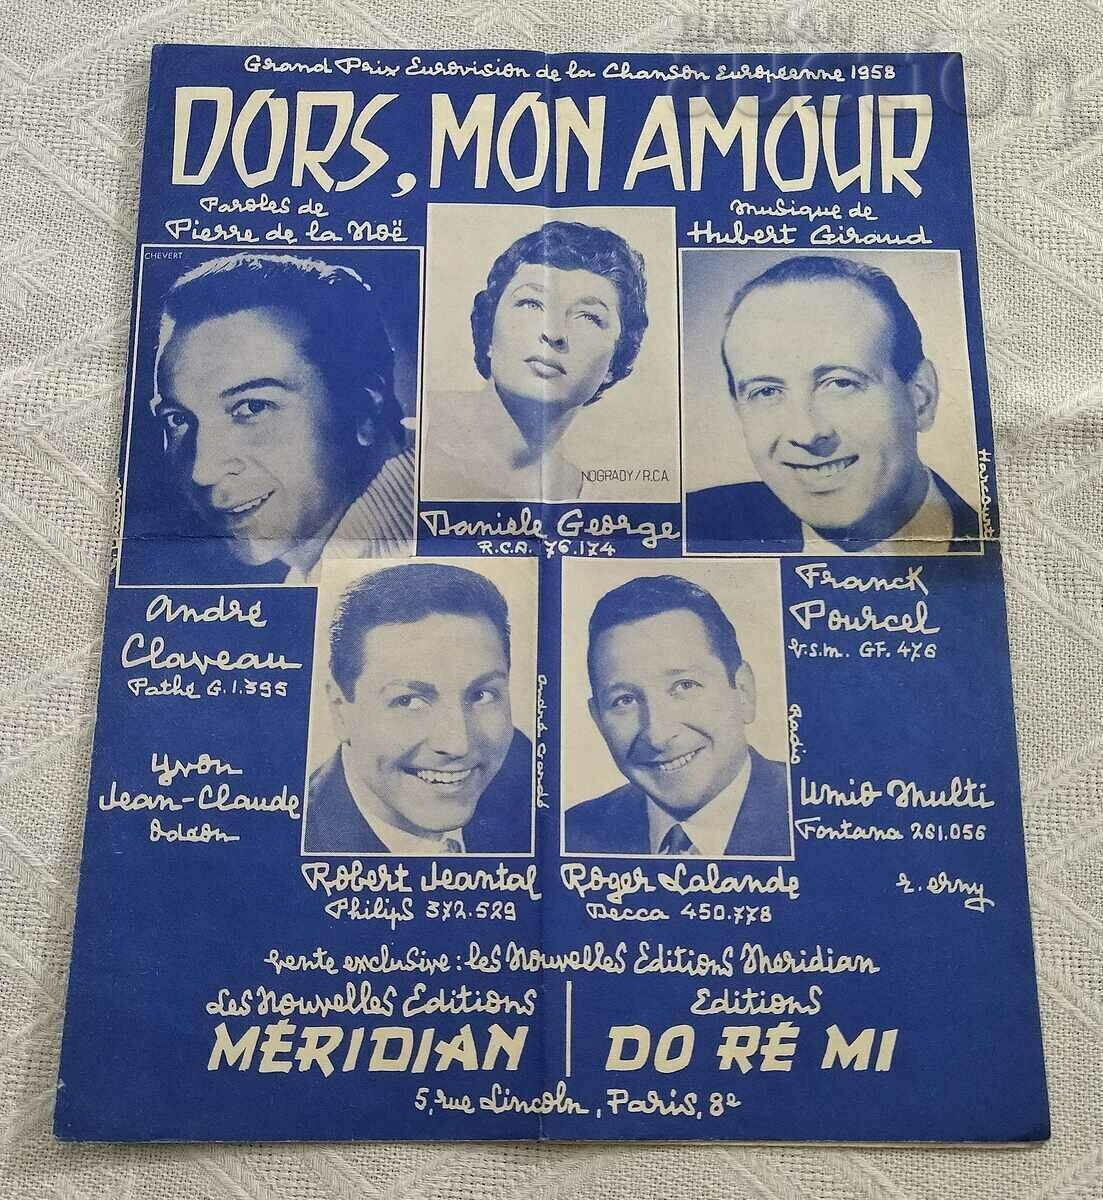 WALTZ "DORS, MON AMOUR" NOTES 1958